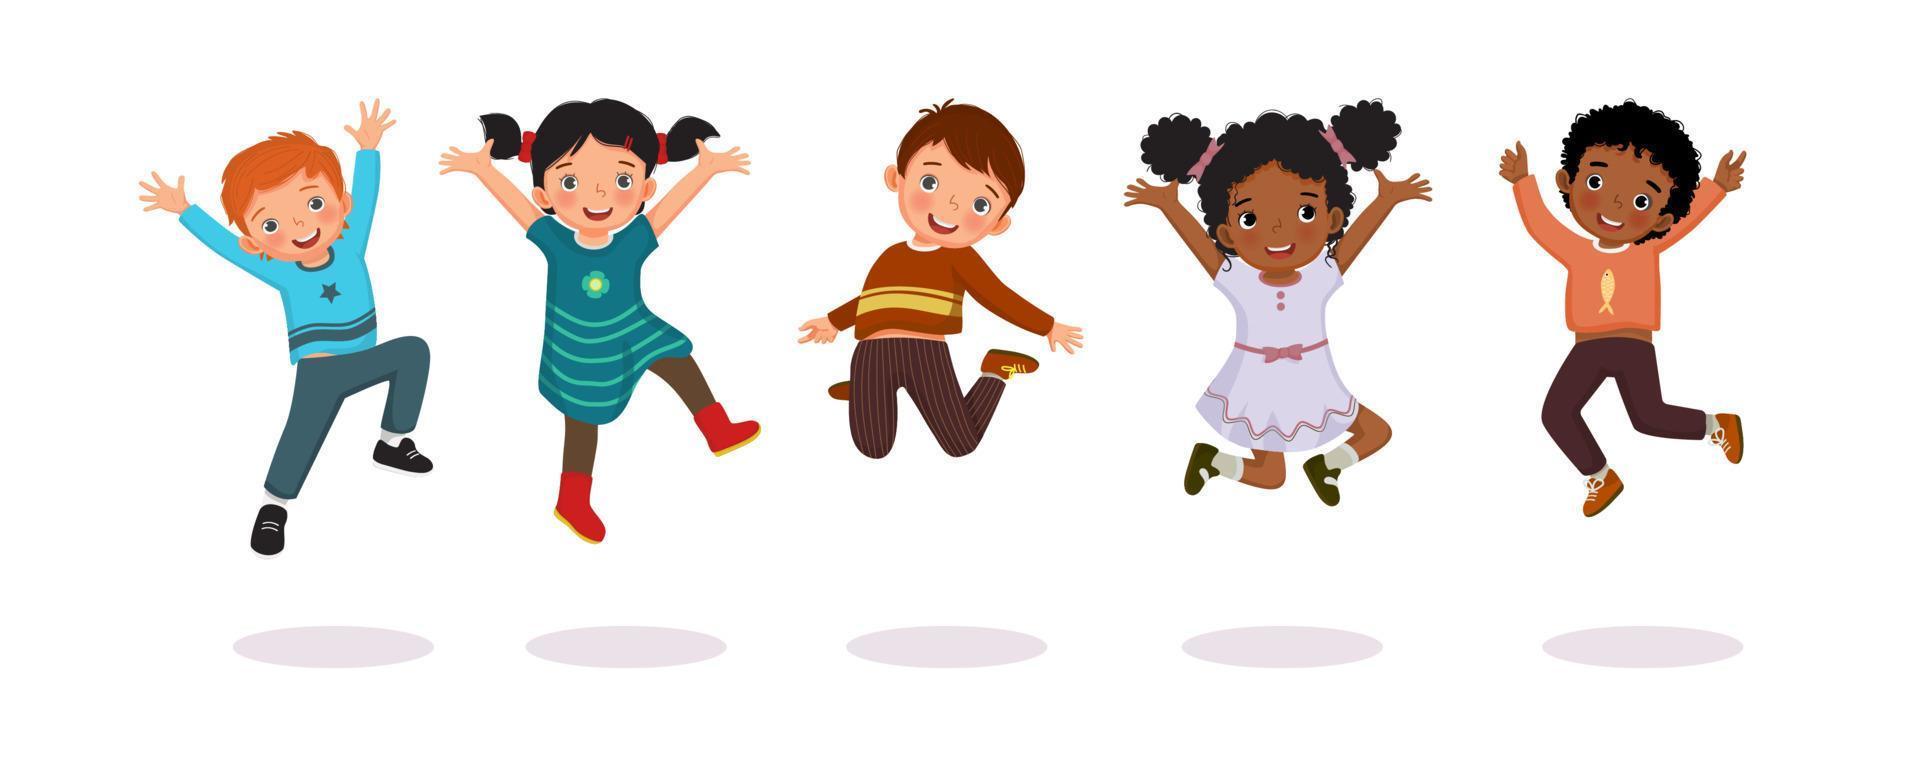 grupo de crianças felizes pulando alegremente com as mãos levantando no ar. vetor de crianças ativas, meninos e meninas, se divertindo mostrando diferentes poses de ação.